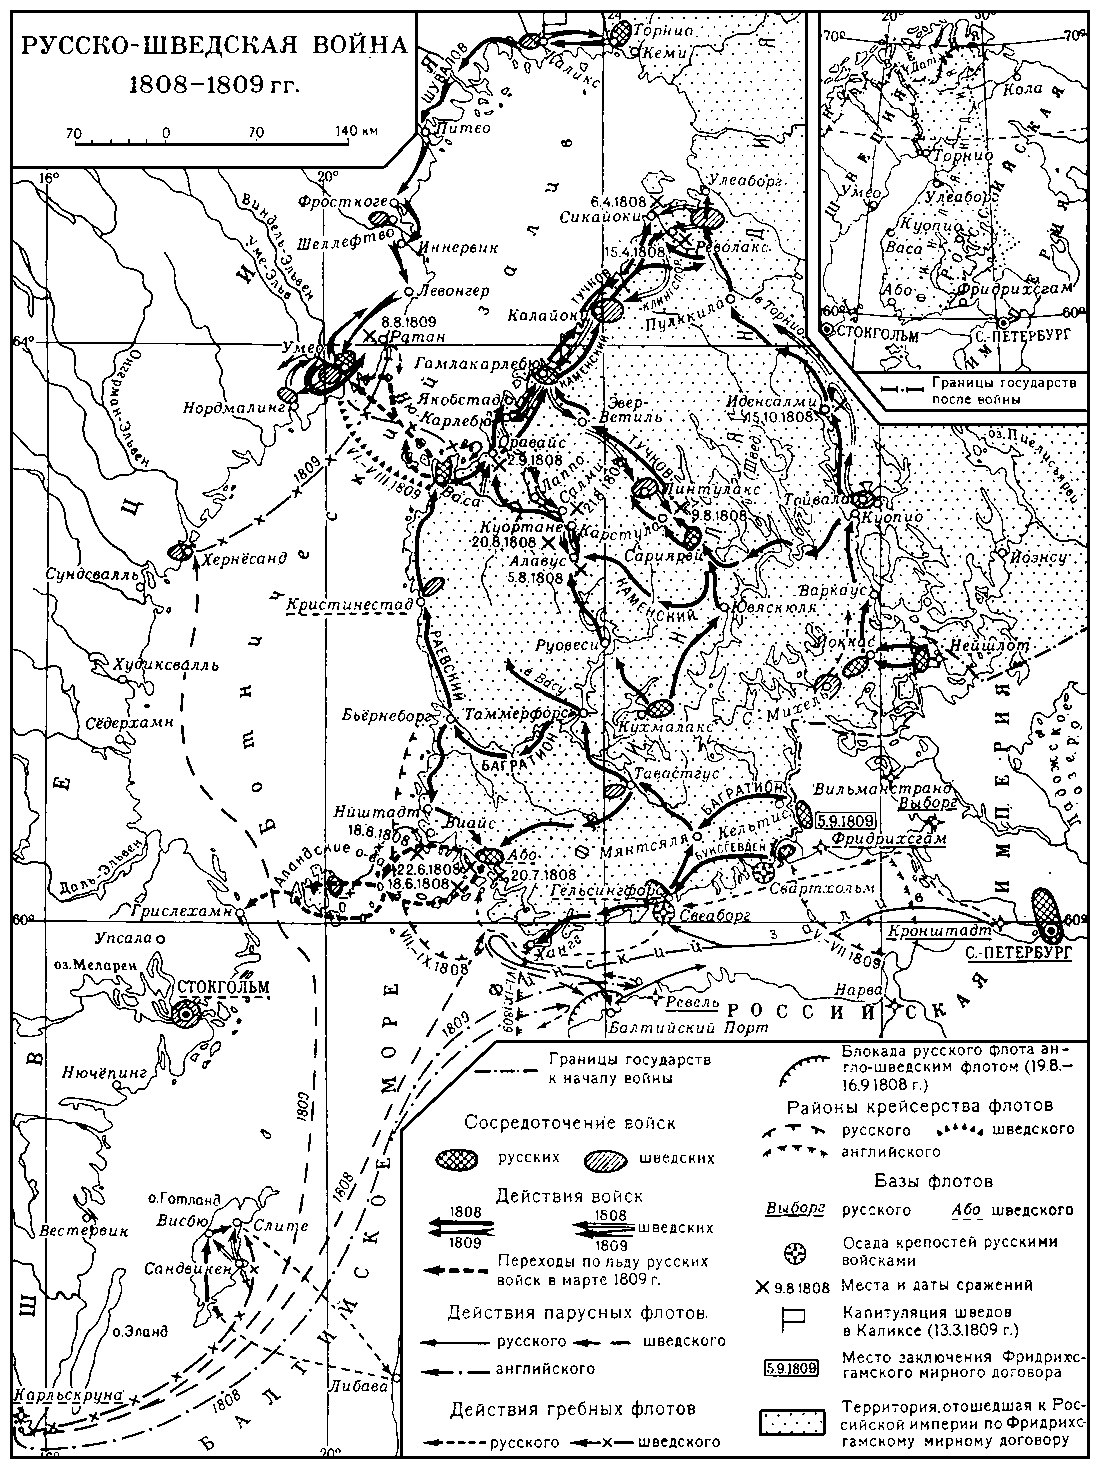 Русско-шведские войны 18-19 вв.